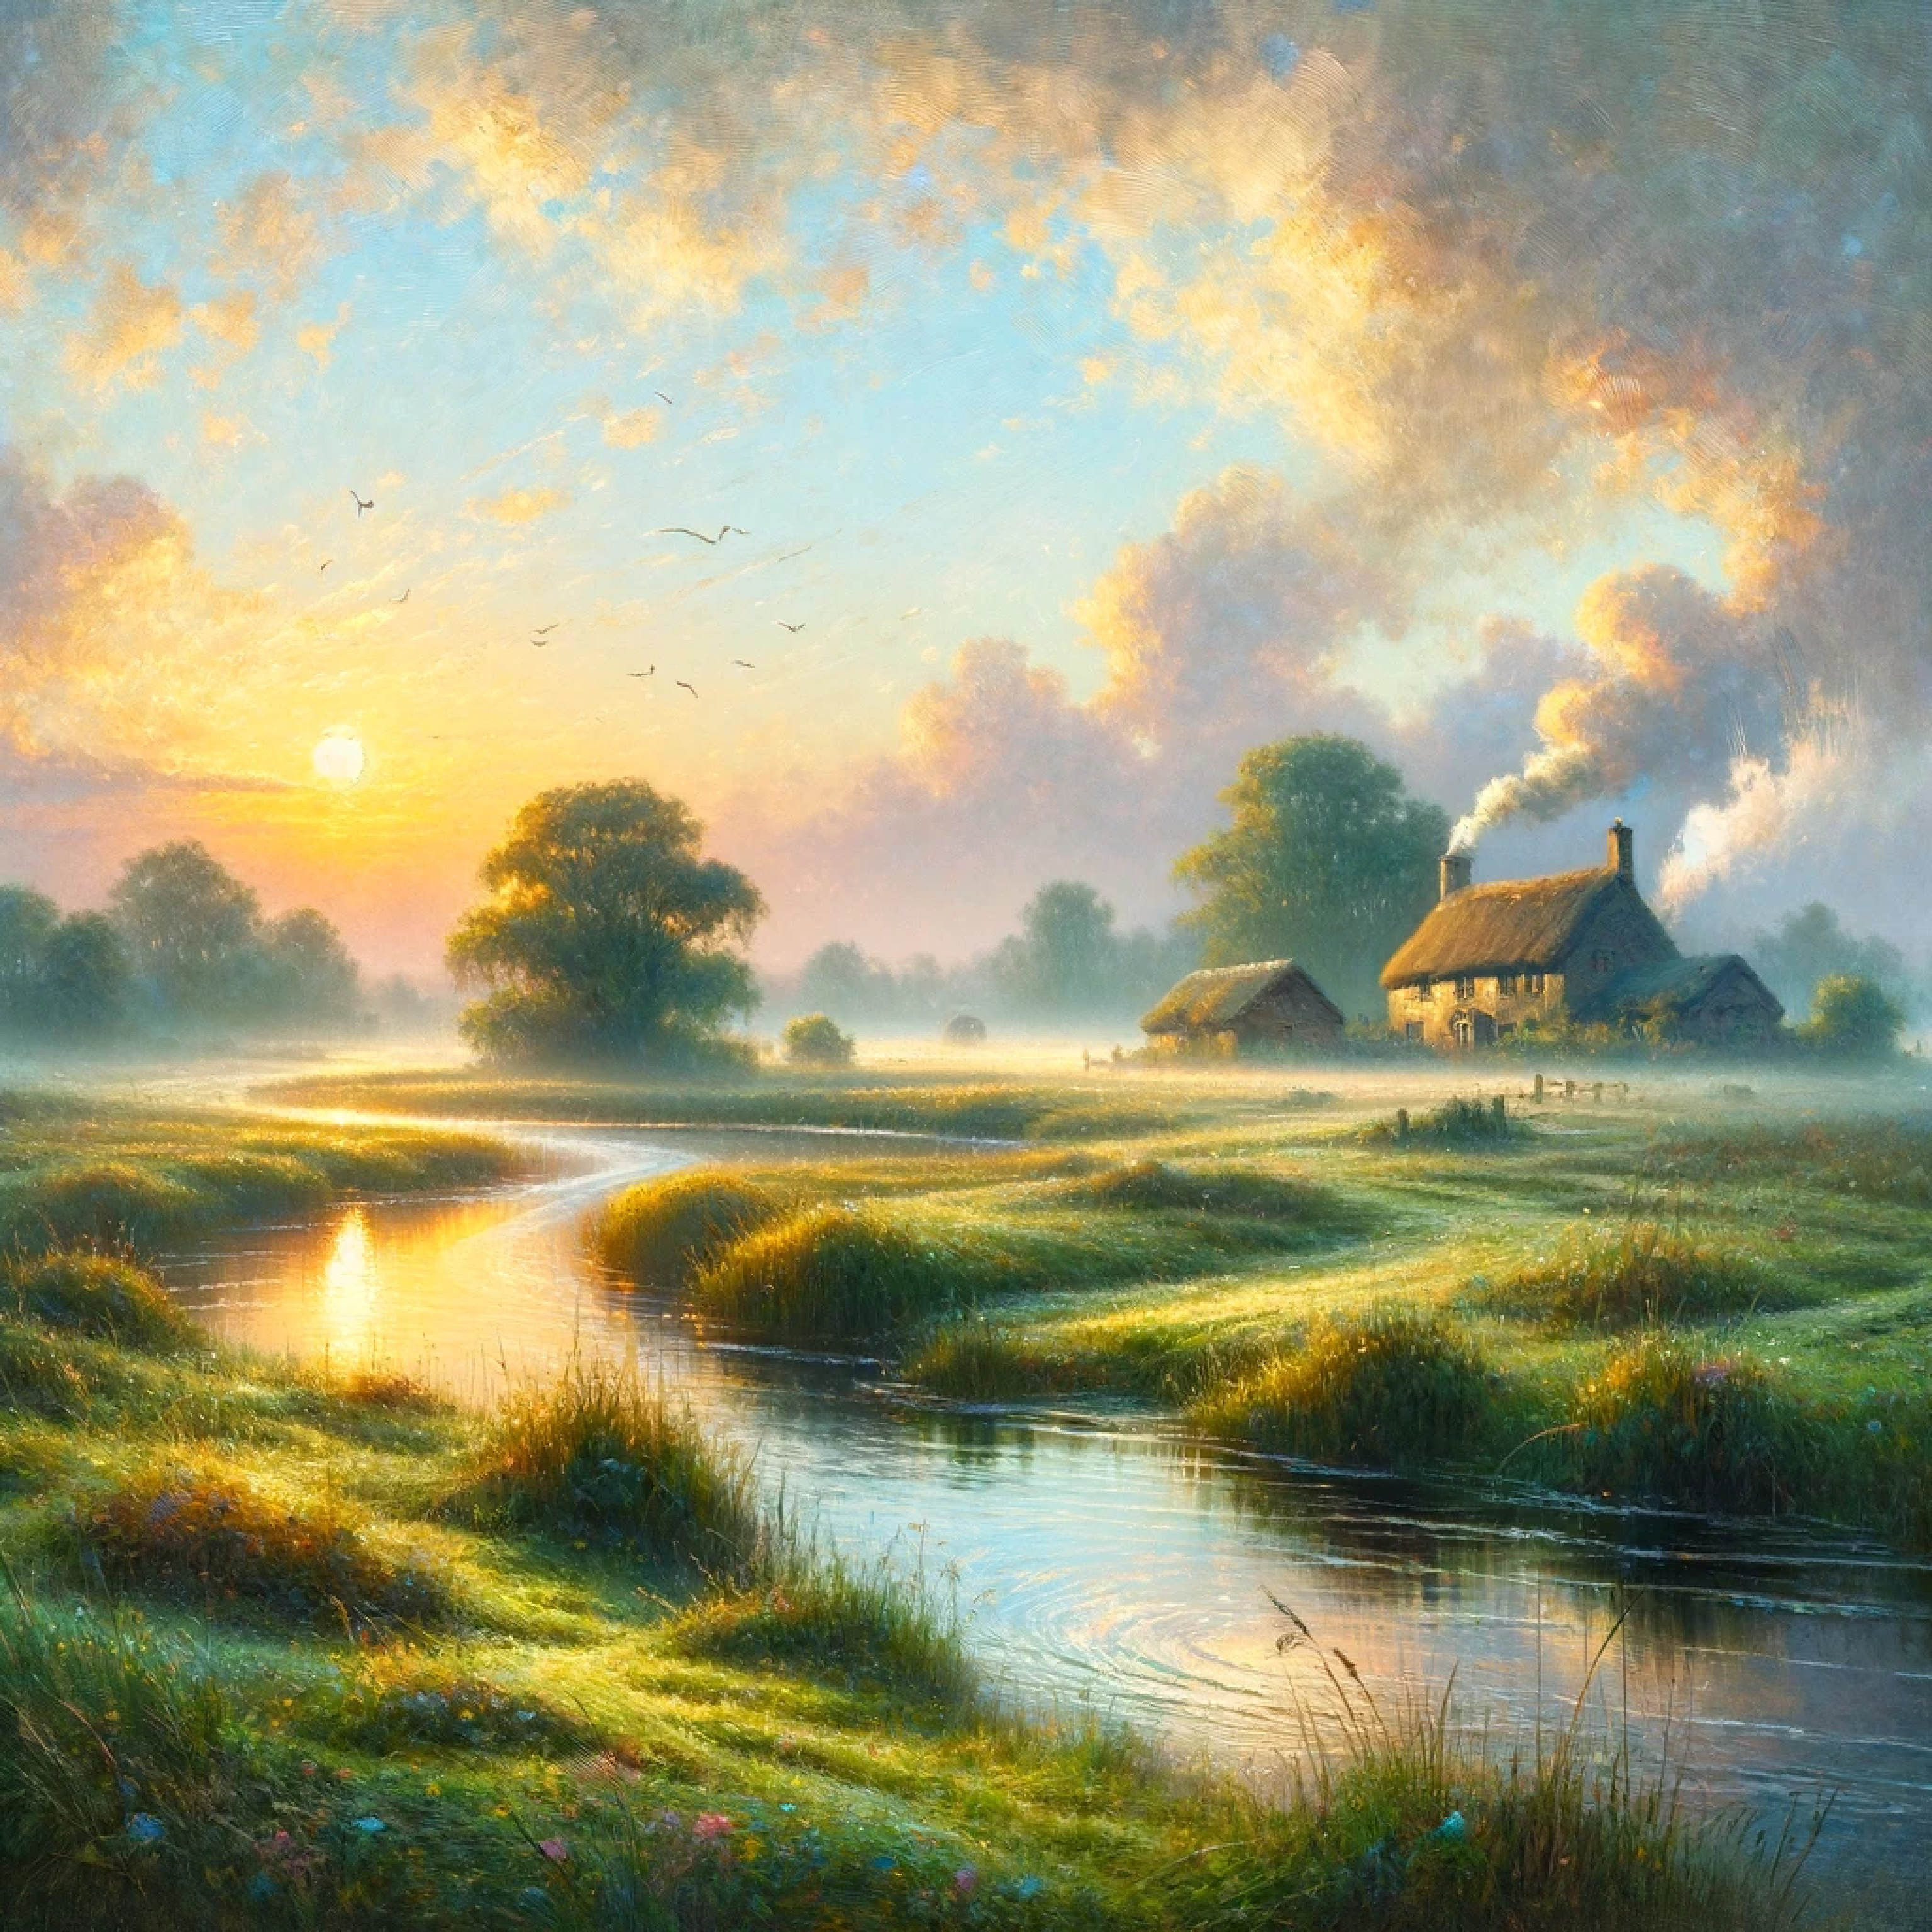 Una pintura al estilo impresionista de un paisaje sereno al amanecer